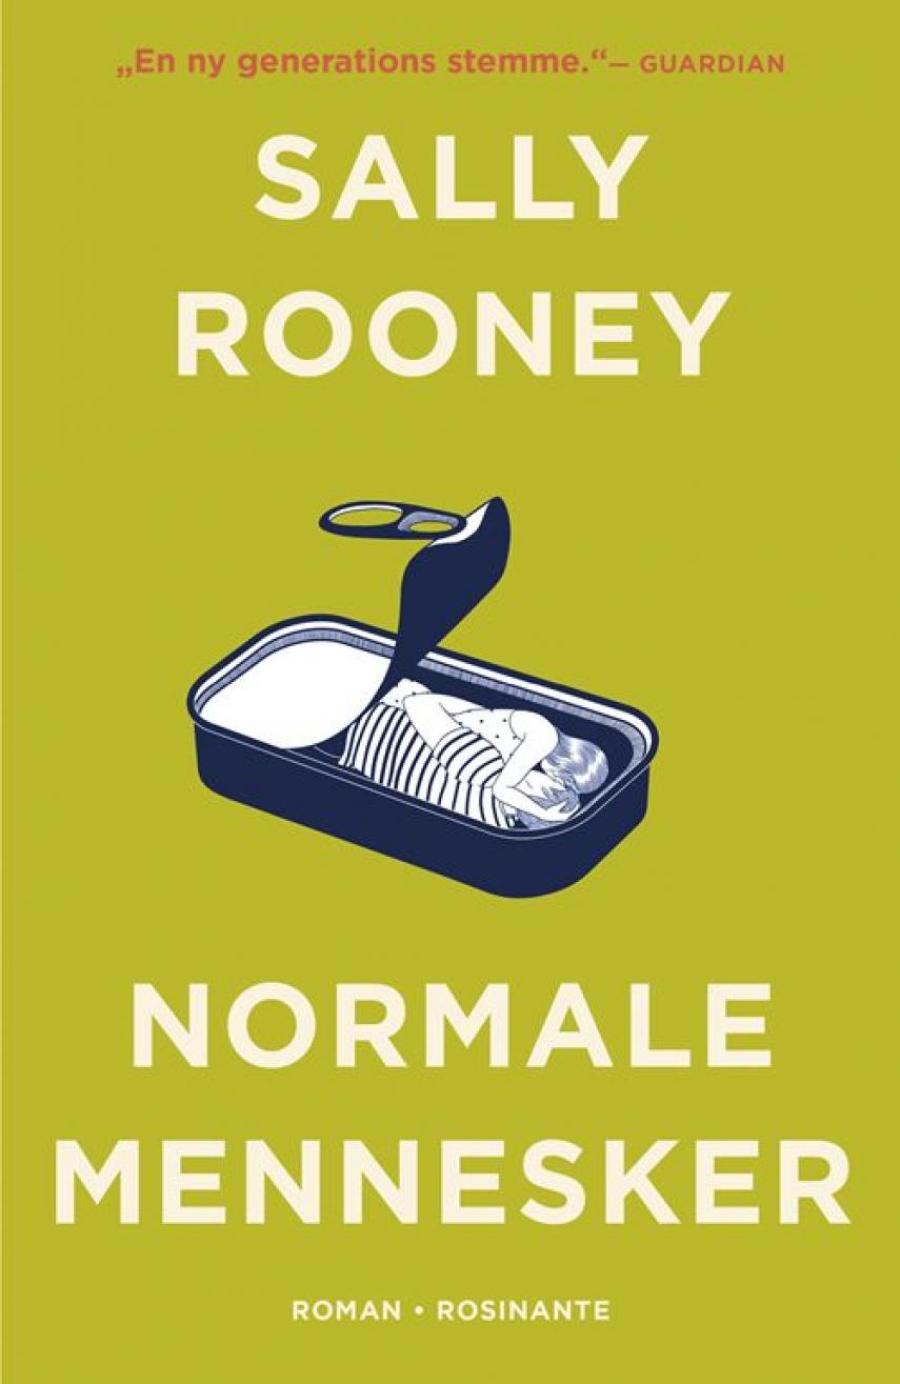 Forsidebillede af bogen Normale mennesker af Sally Rooney